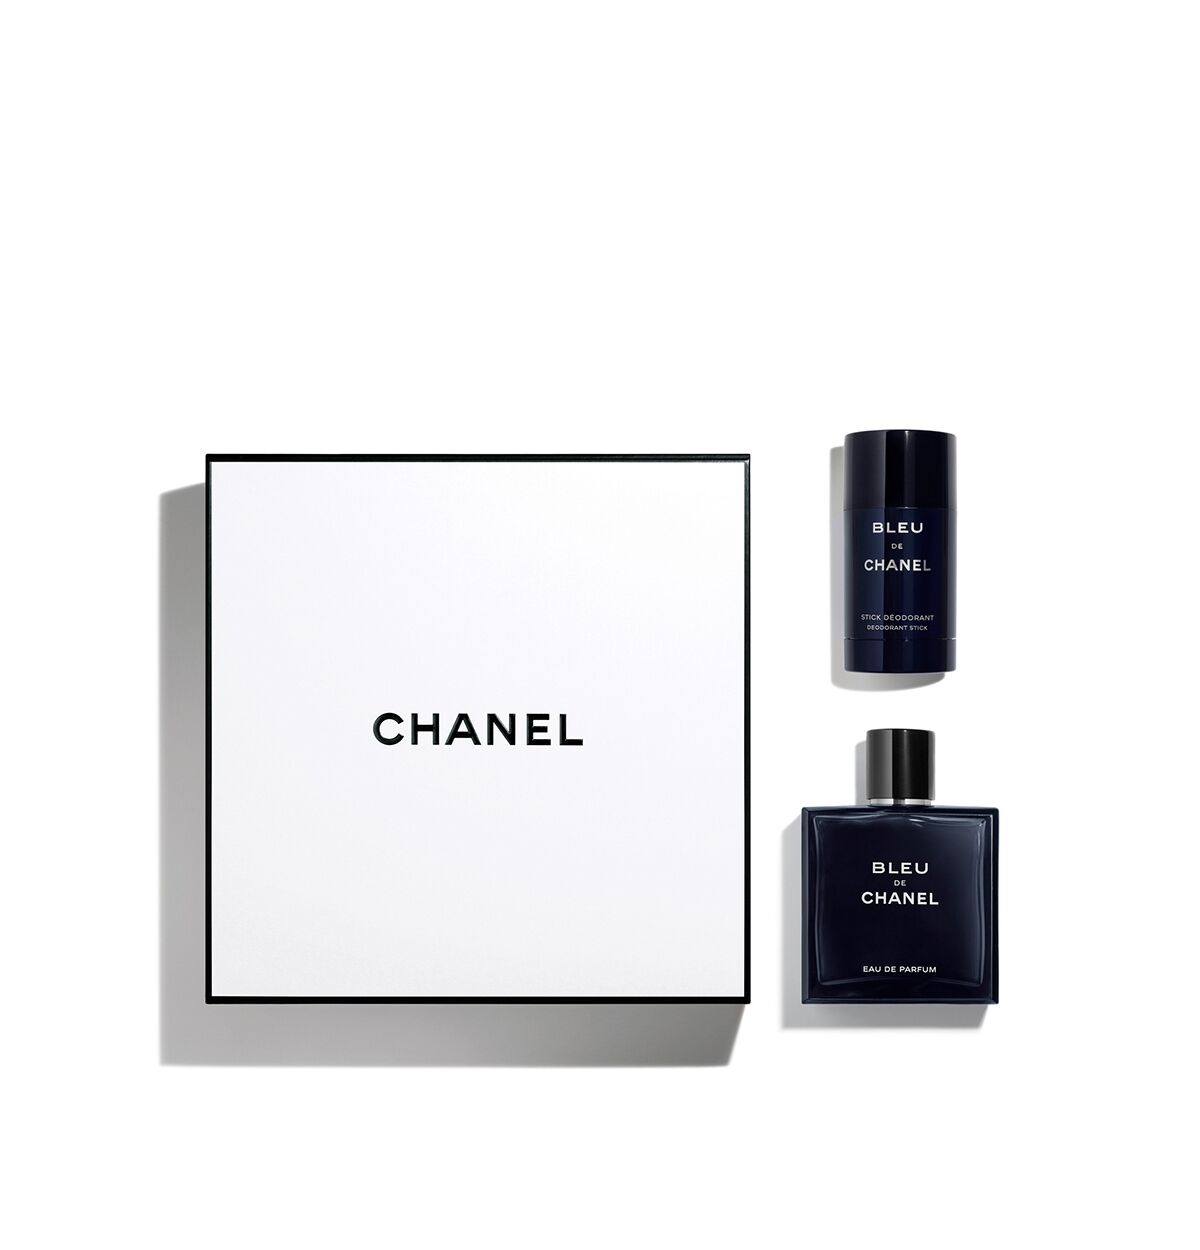 CHANEL Men's 2-Pc. BLEU DE CHANEL Eau de Parfum Deodorant Gift Set